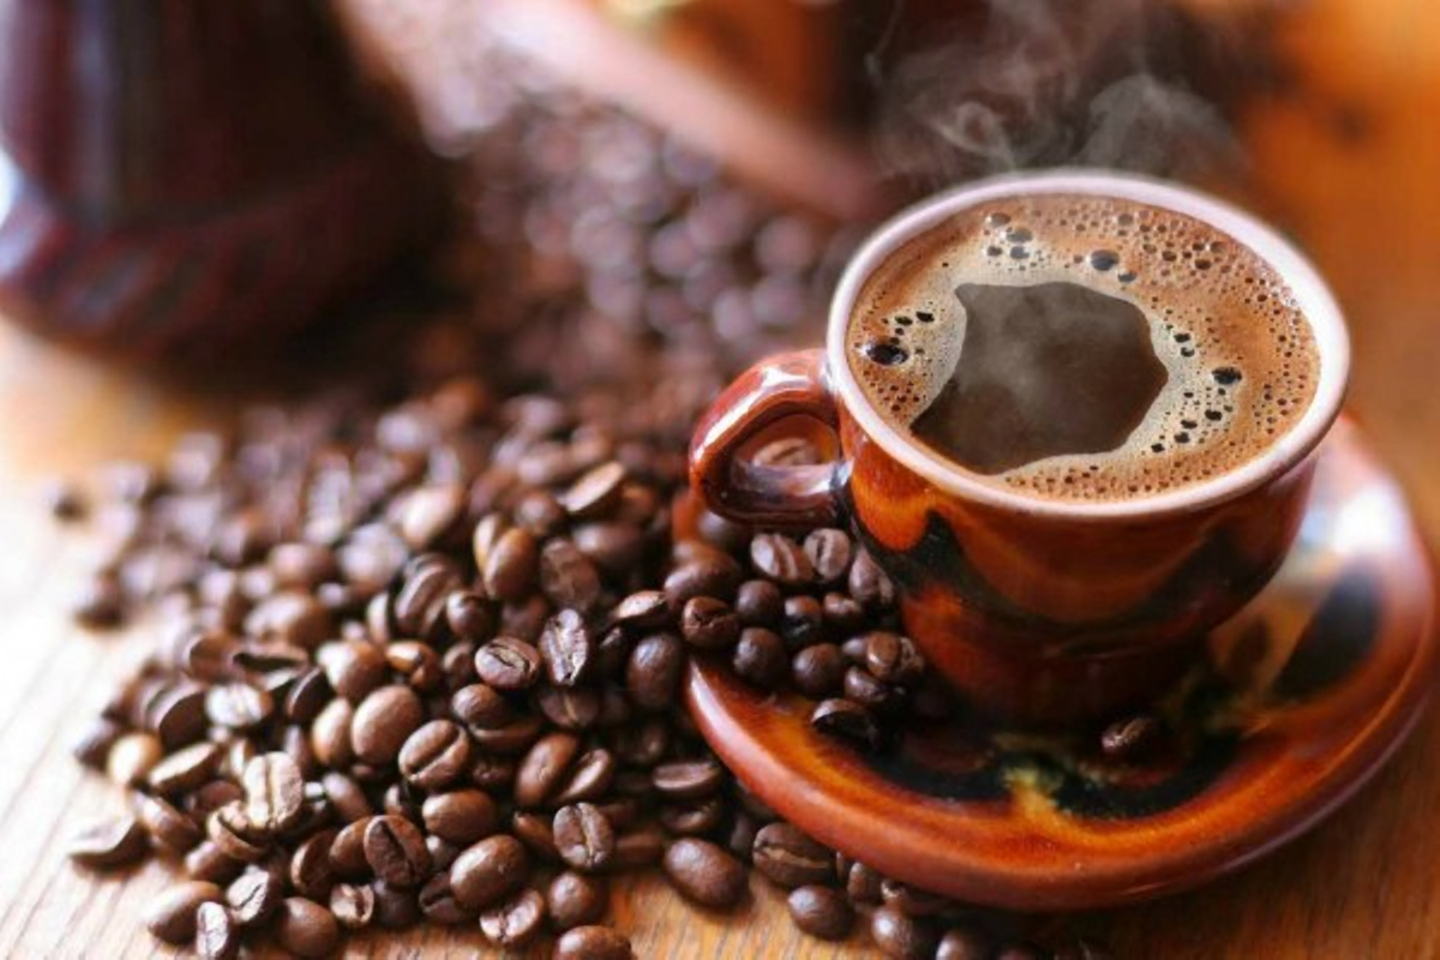 فوائد القهوة التي لا يعرفها عشاقها: تناولها يوميًا وهذا ما سيحدث لجسمك بعد 10 أيام وفق أحدث الدراسات